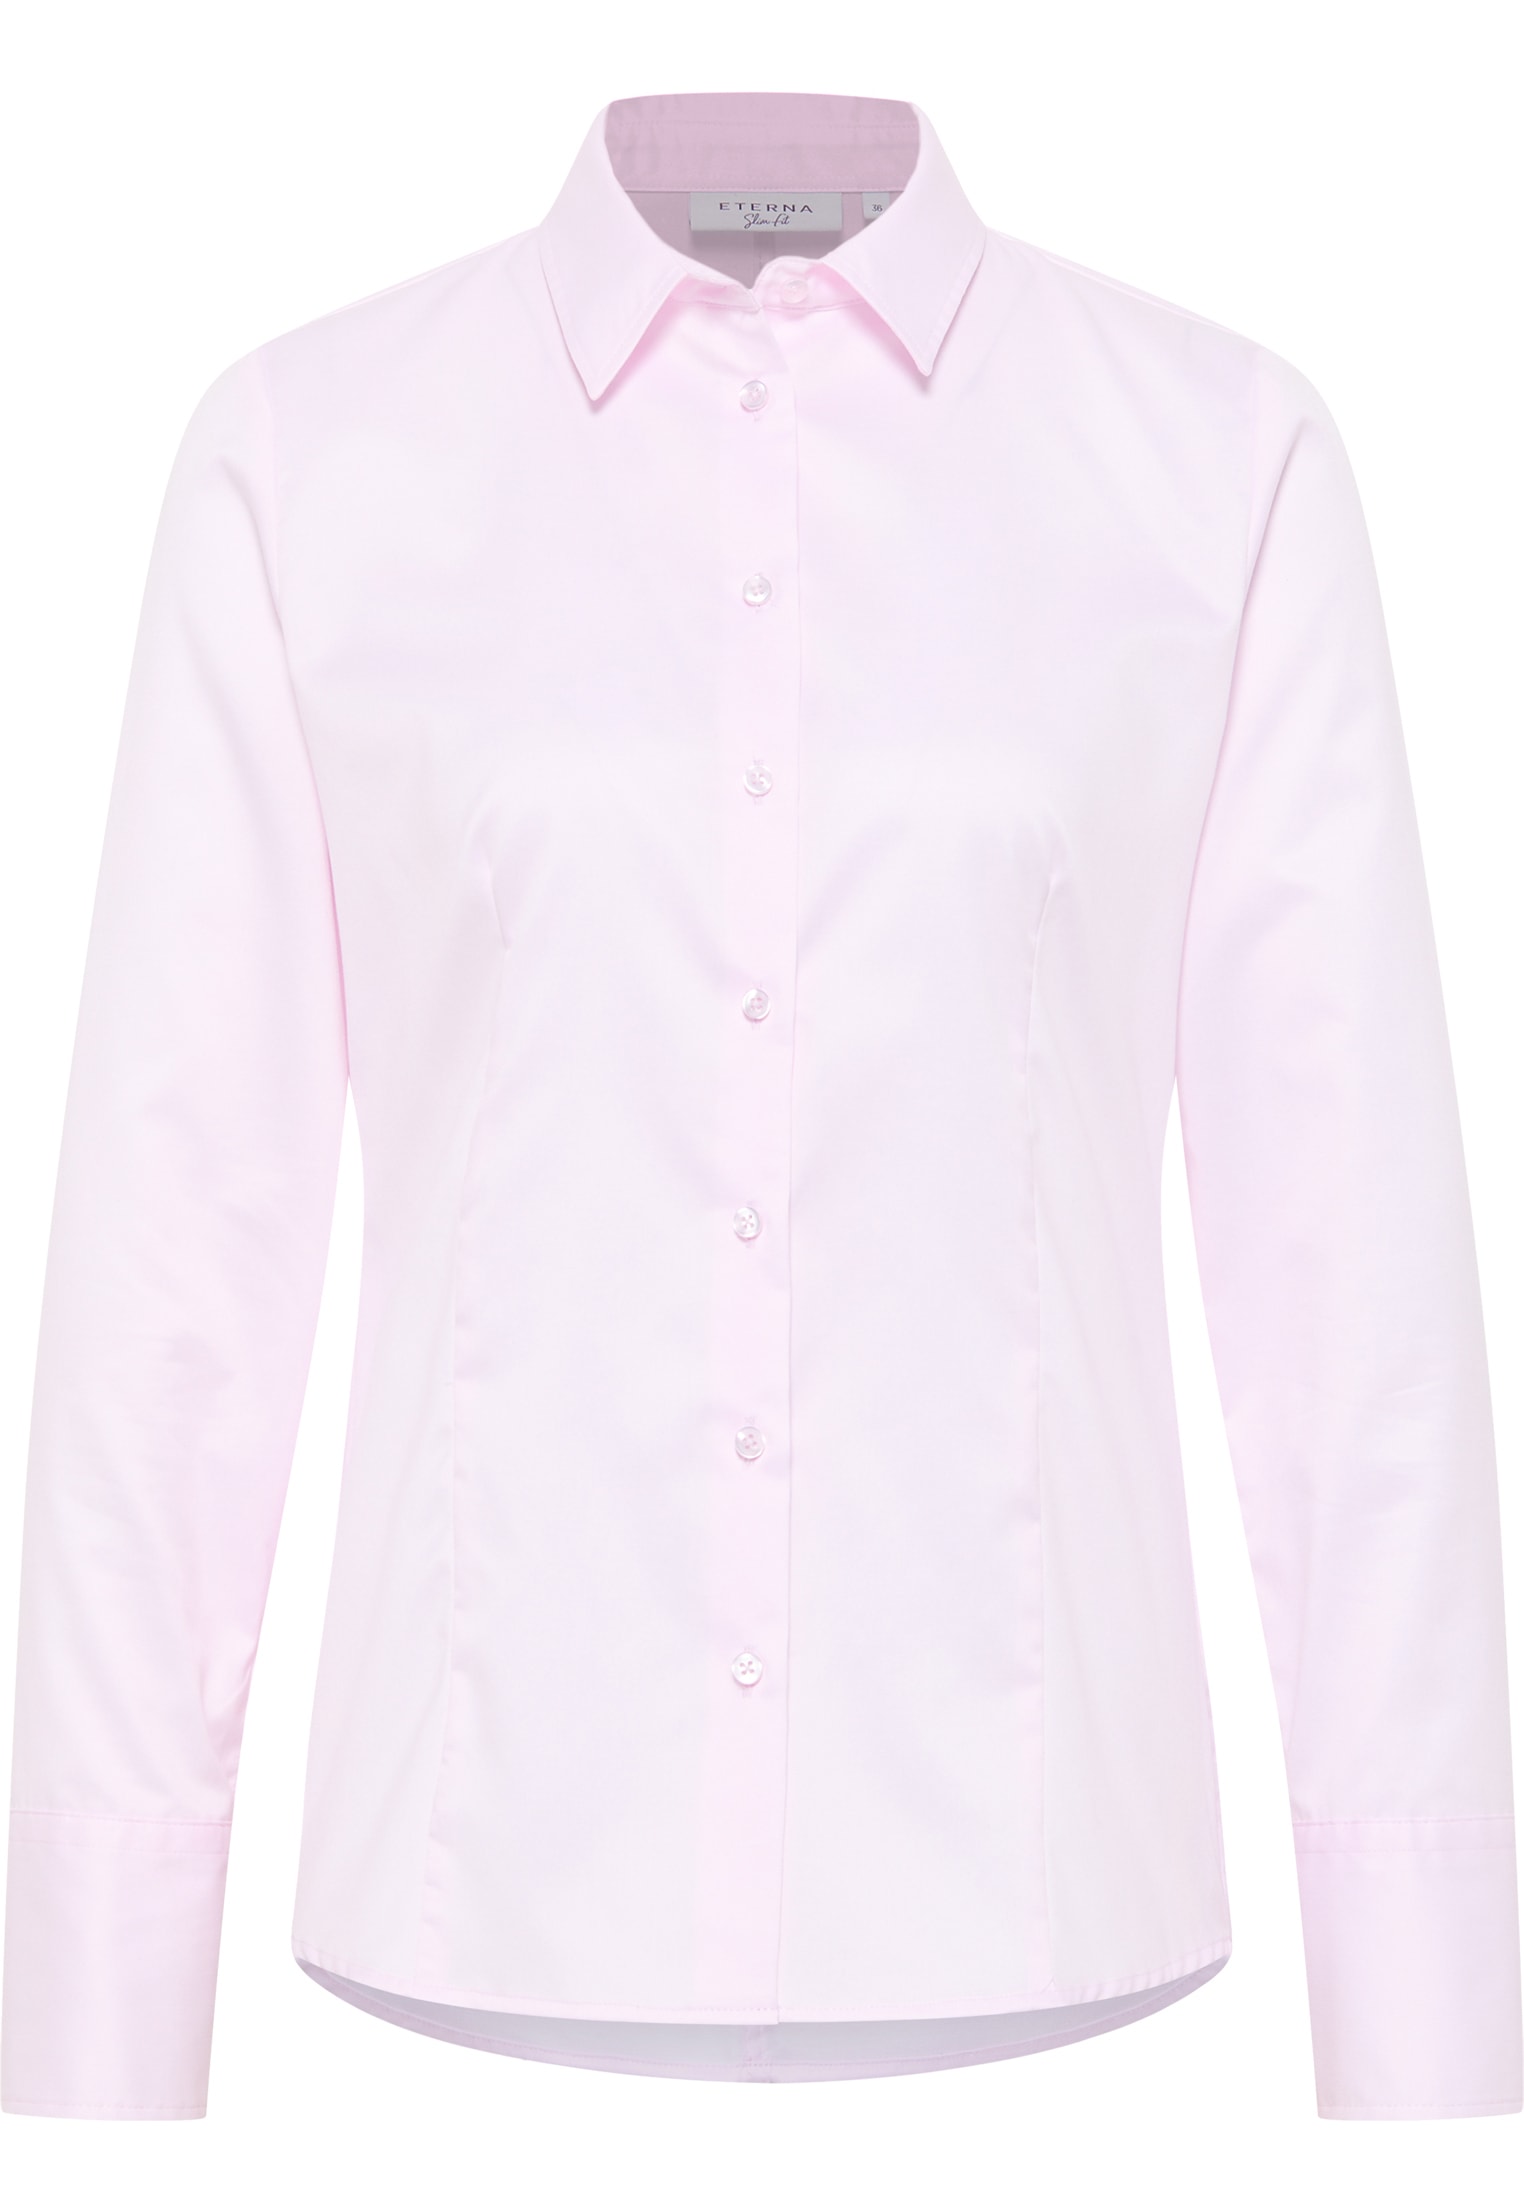 | rose | 2BL00075-15-11-50-1/1 50 | Blouse Shirt in | rose sleeve plain long Cover